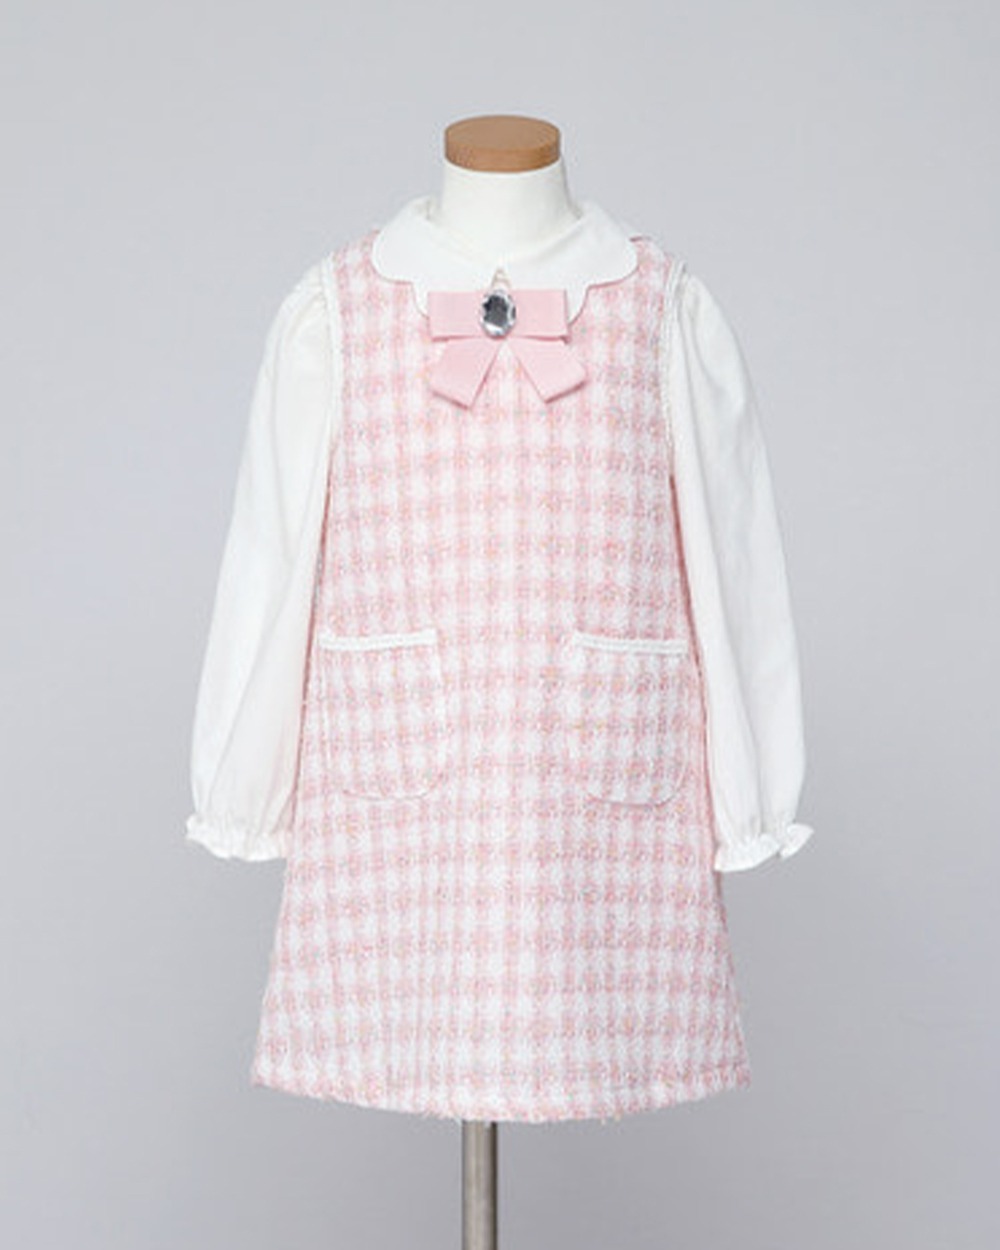 블루밍 트위드 슬리브리스 드레스(Pink)